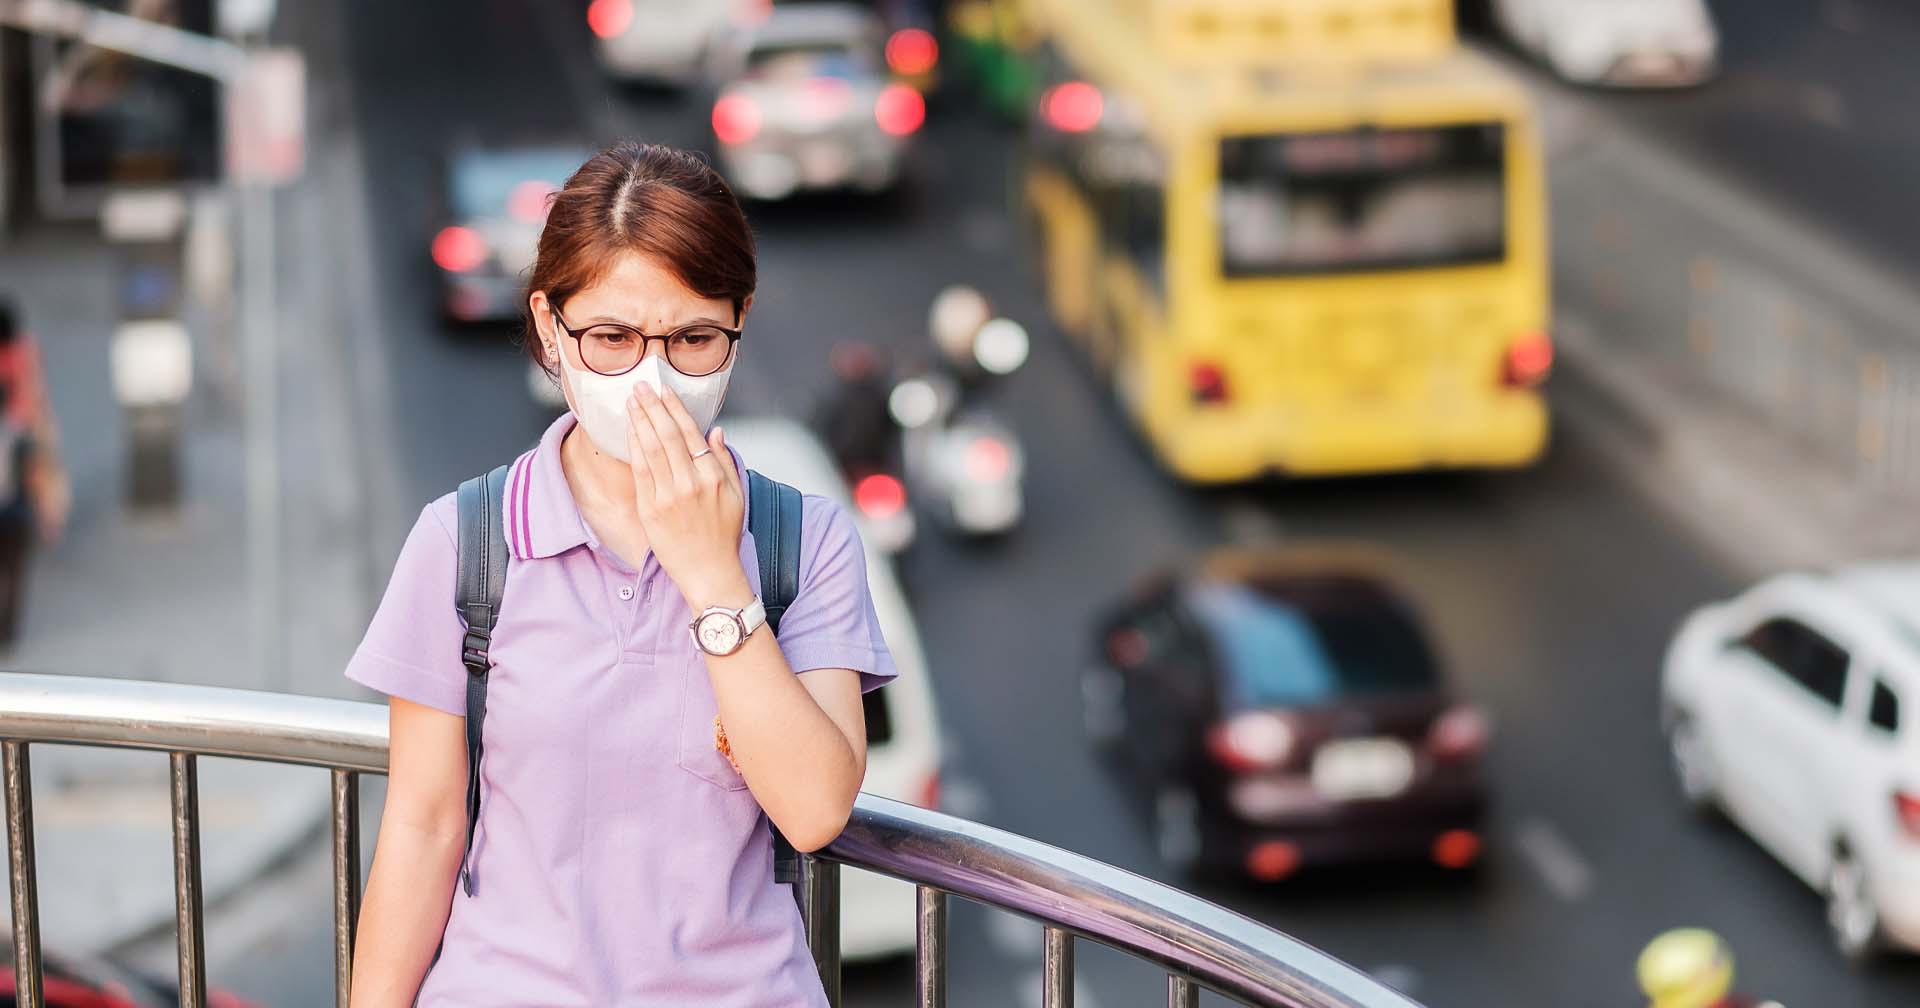 ผลการศึกษาเผย สัมผัสมลพิษทางอากาศ-ฝุ่น PM 2.5 เพิ่มความเสี่ยง ‘สมองเสื่อม’